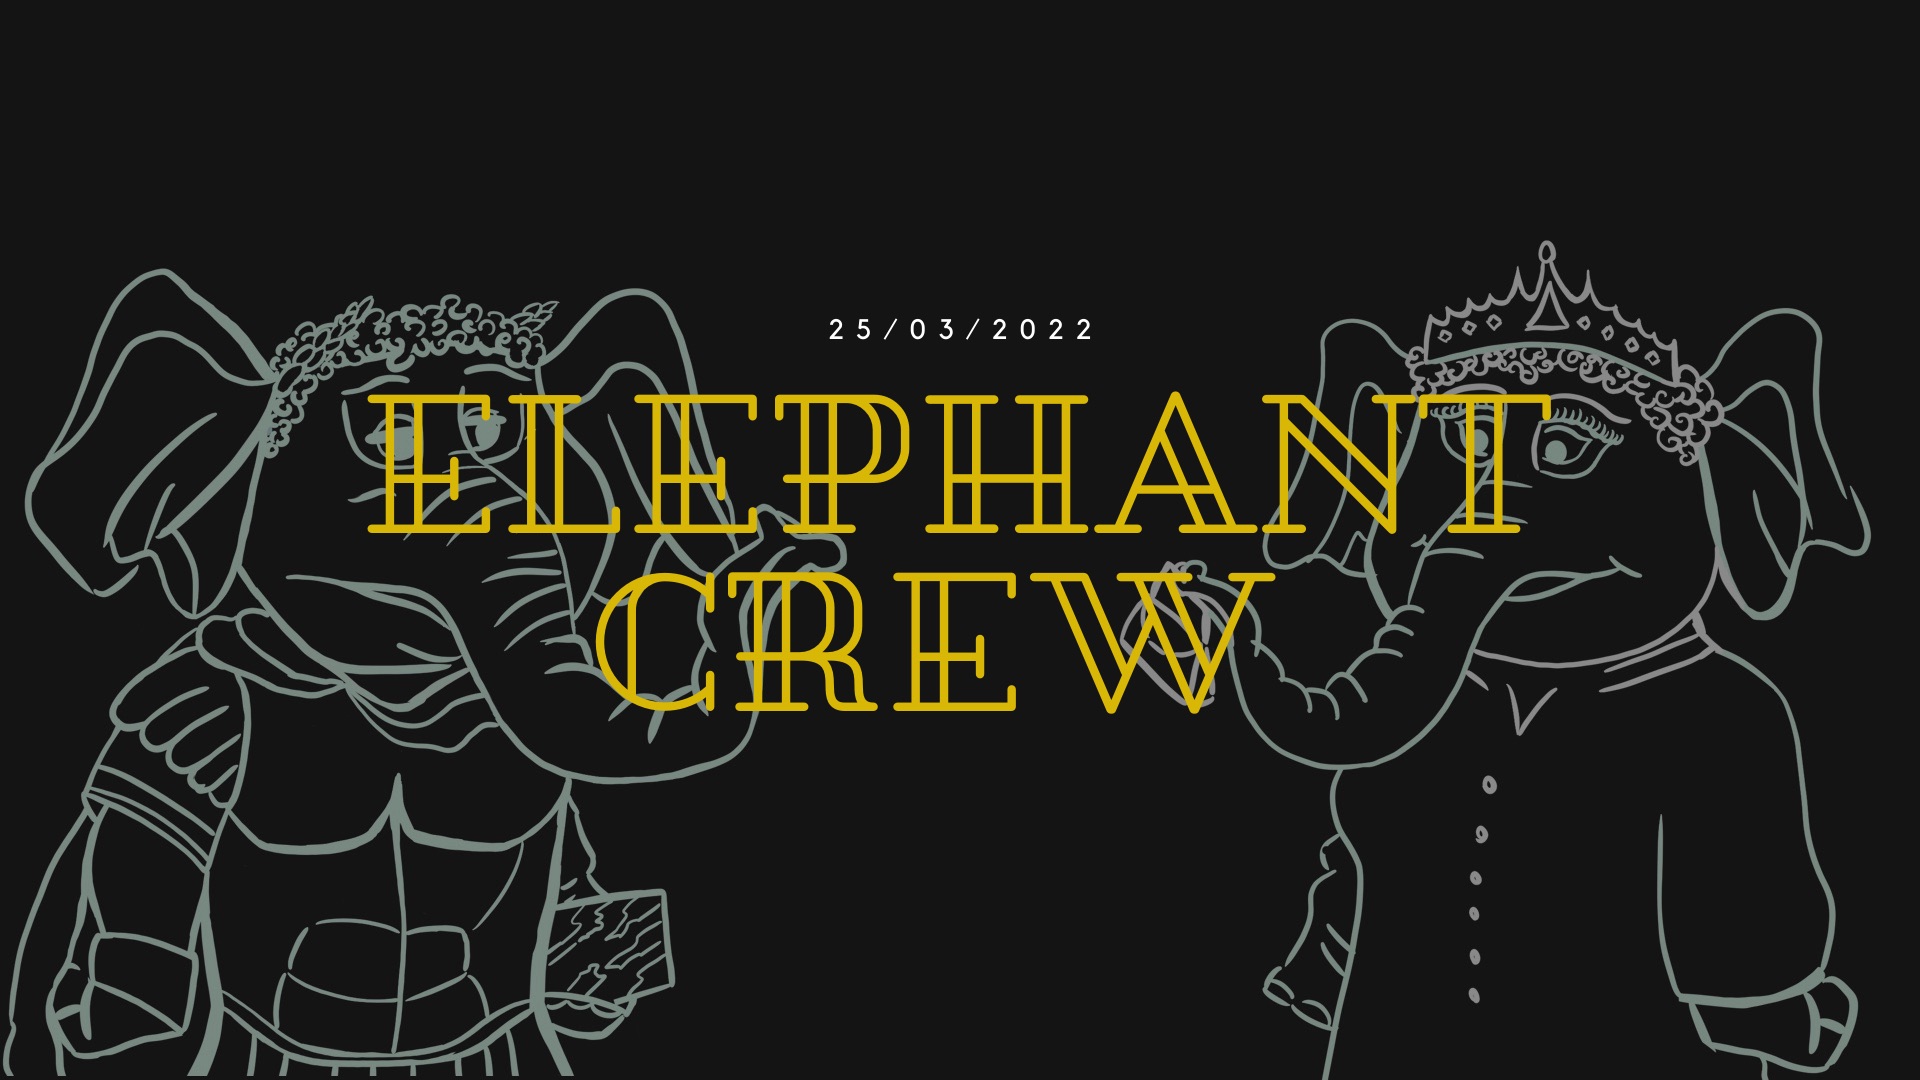 The Elephant Crew